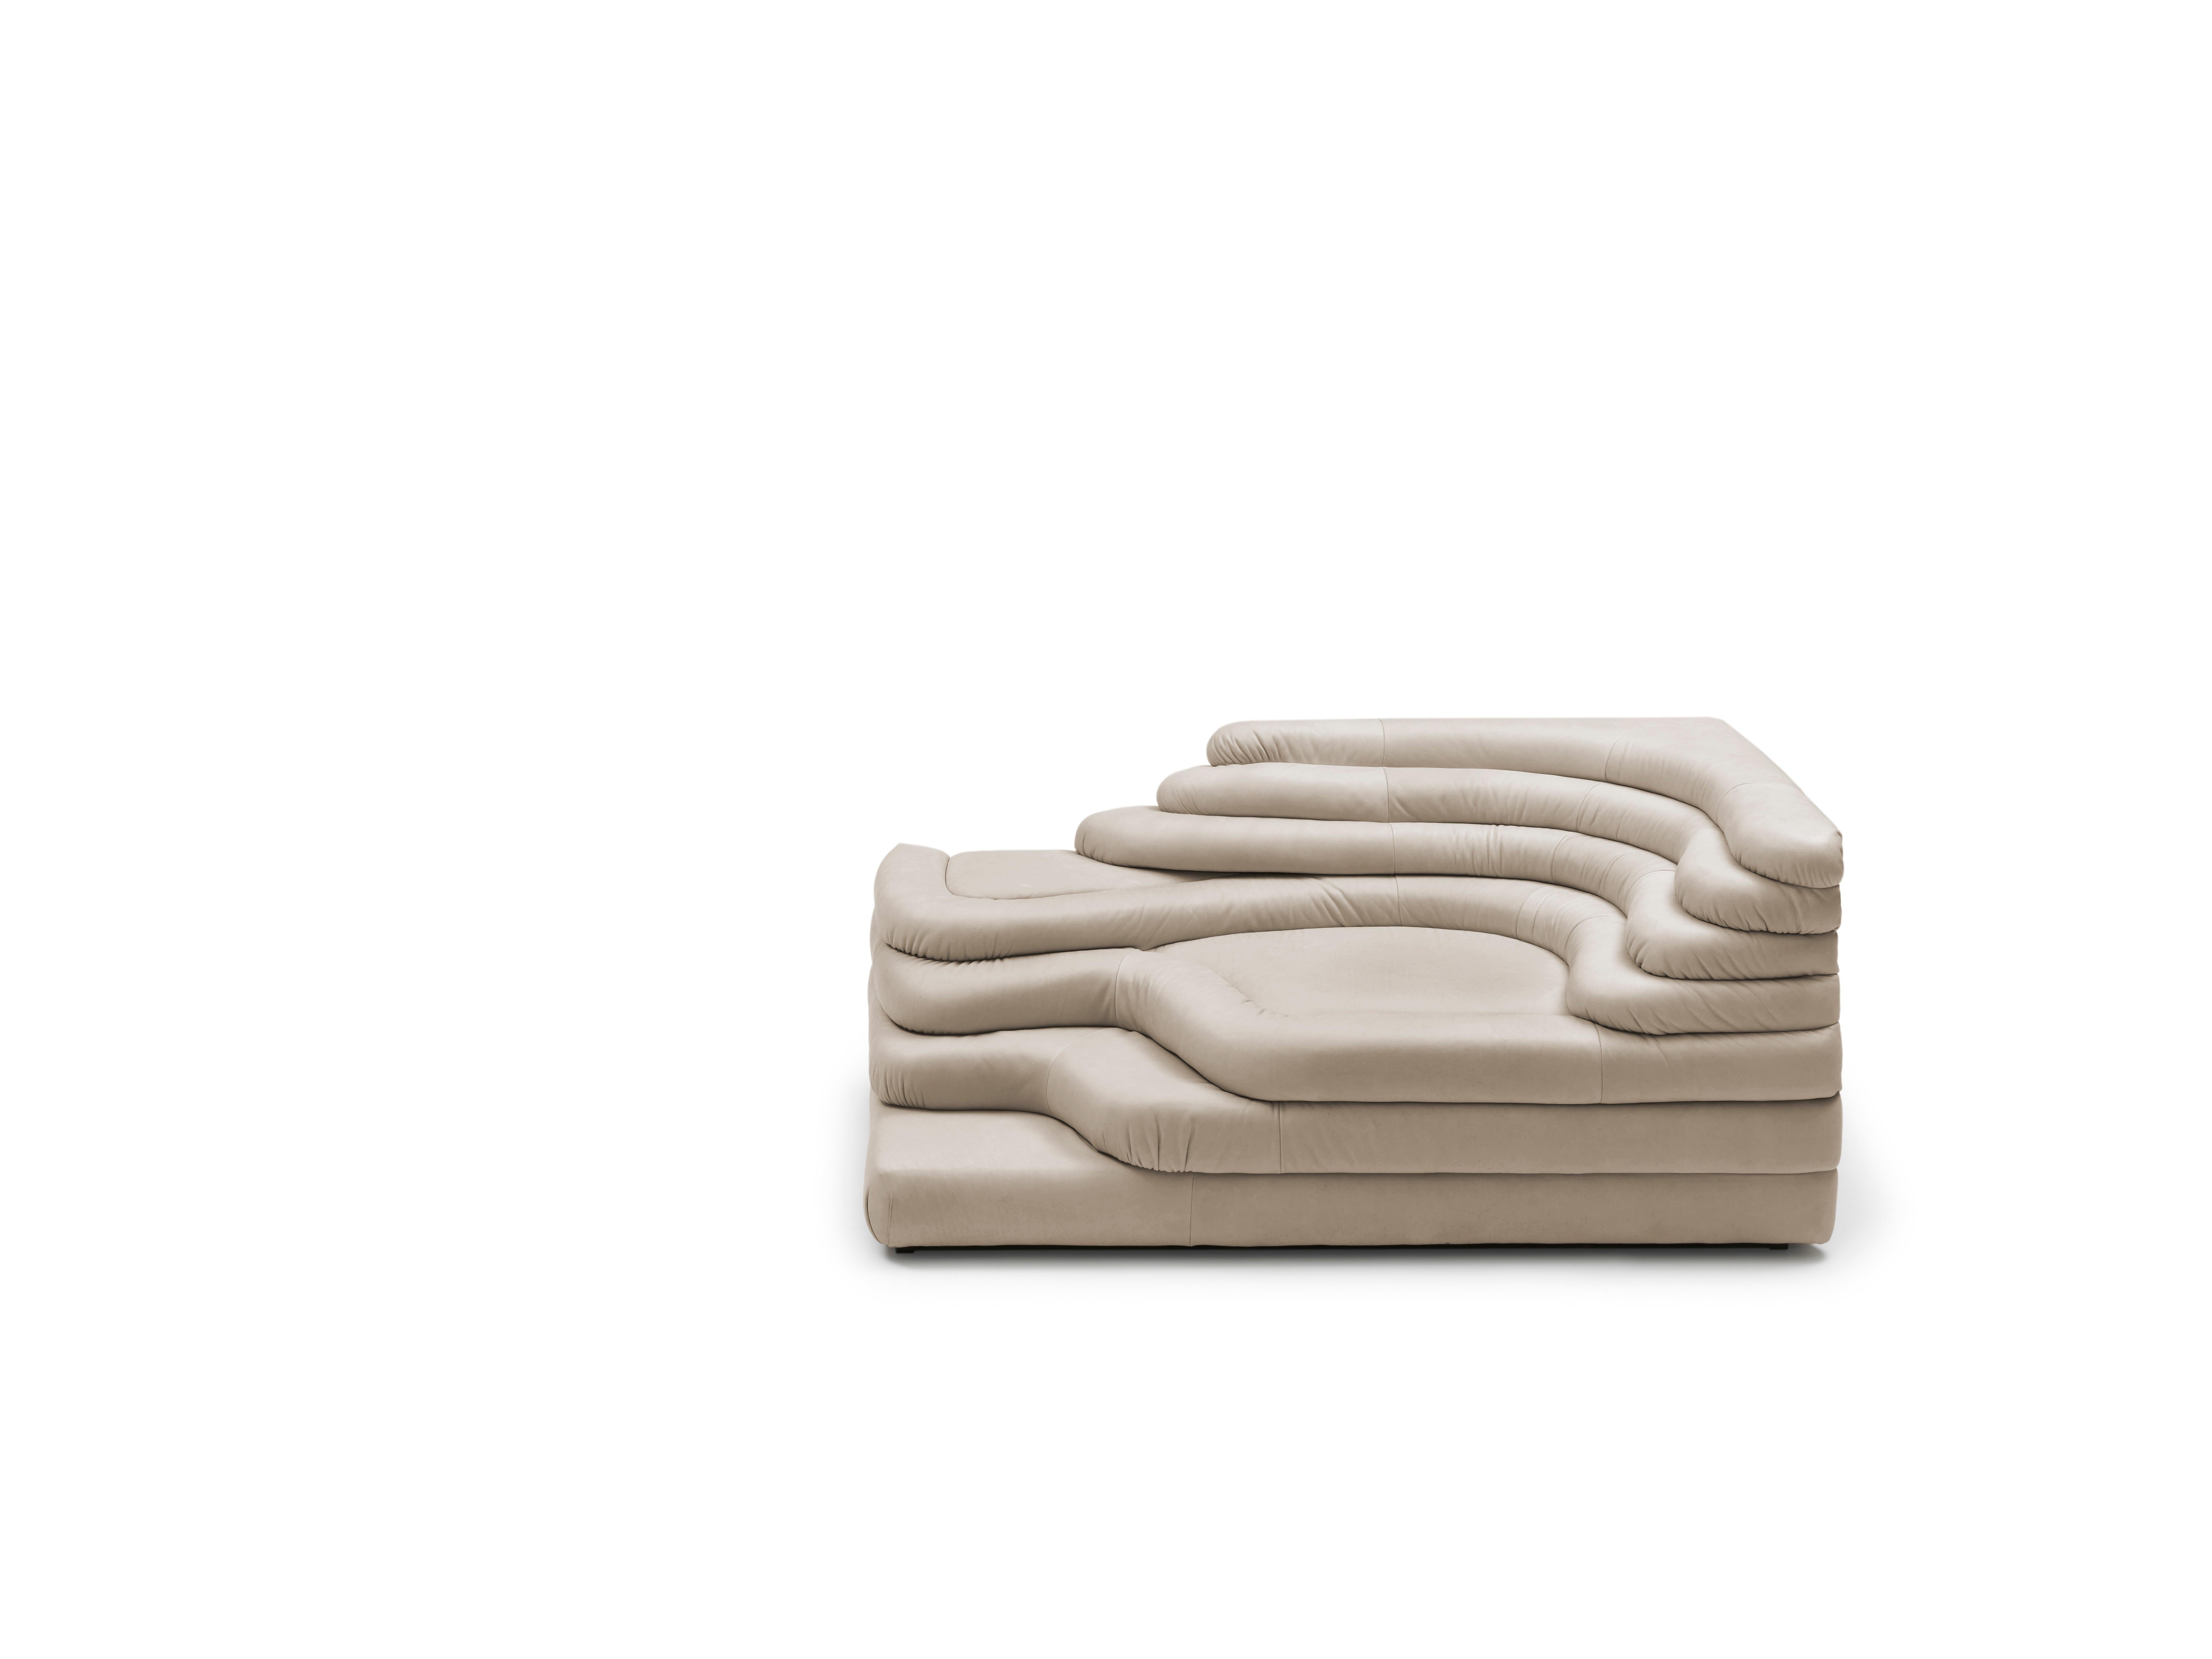 Sofa DS-1025 von De Sede
Entwurf: Ubald Klug
Abmessungen: T 91 x B 156 x H 70 cm
MATERIALIEN: SEDEX-Polsterung mit Wattekissen. Stabiler, kompakter Rahmen aus Buche und Plattenmaterial.

Die Preise können sich je nach den gewählten Materialien und